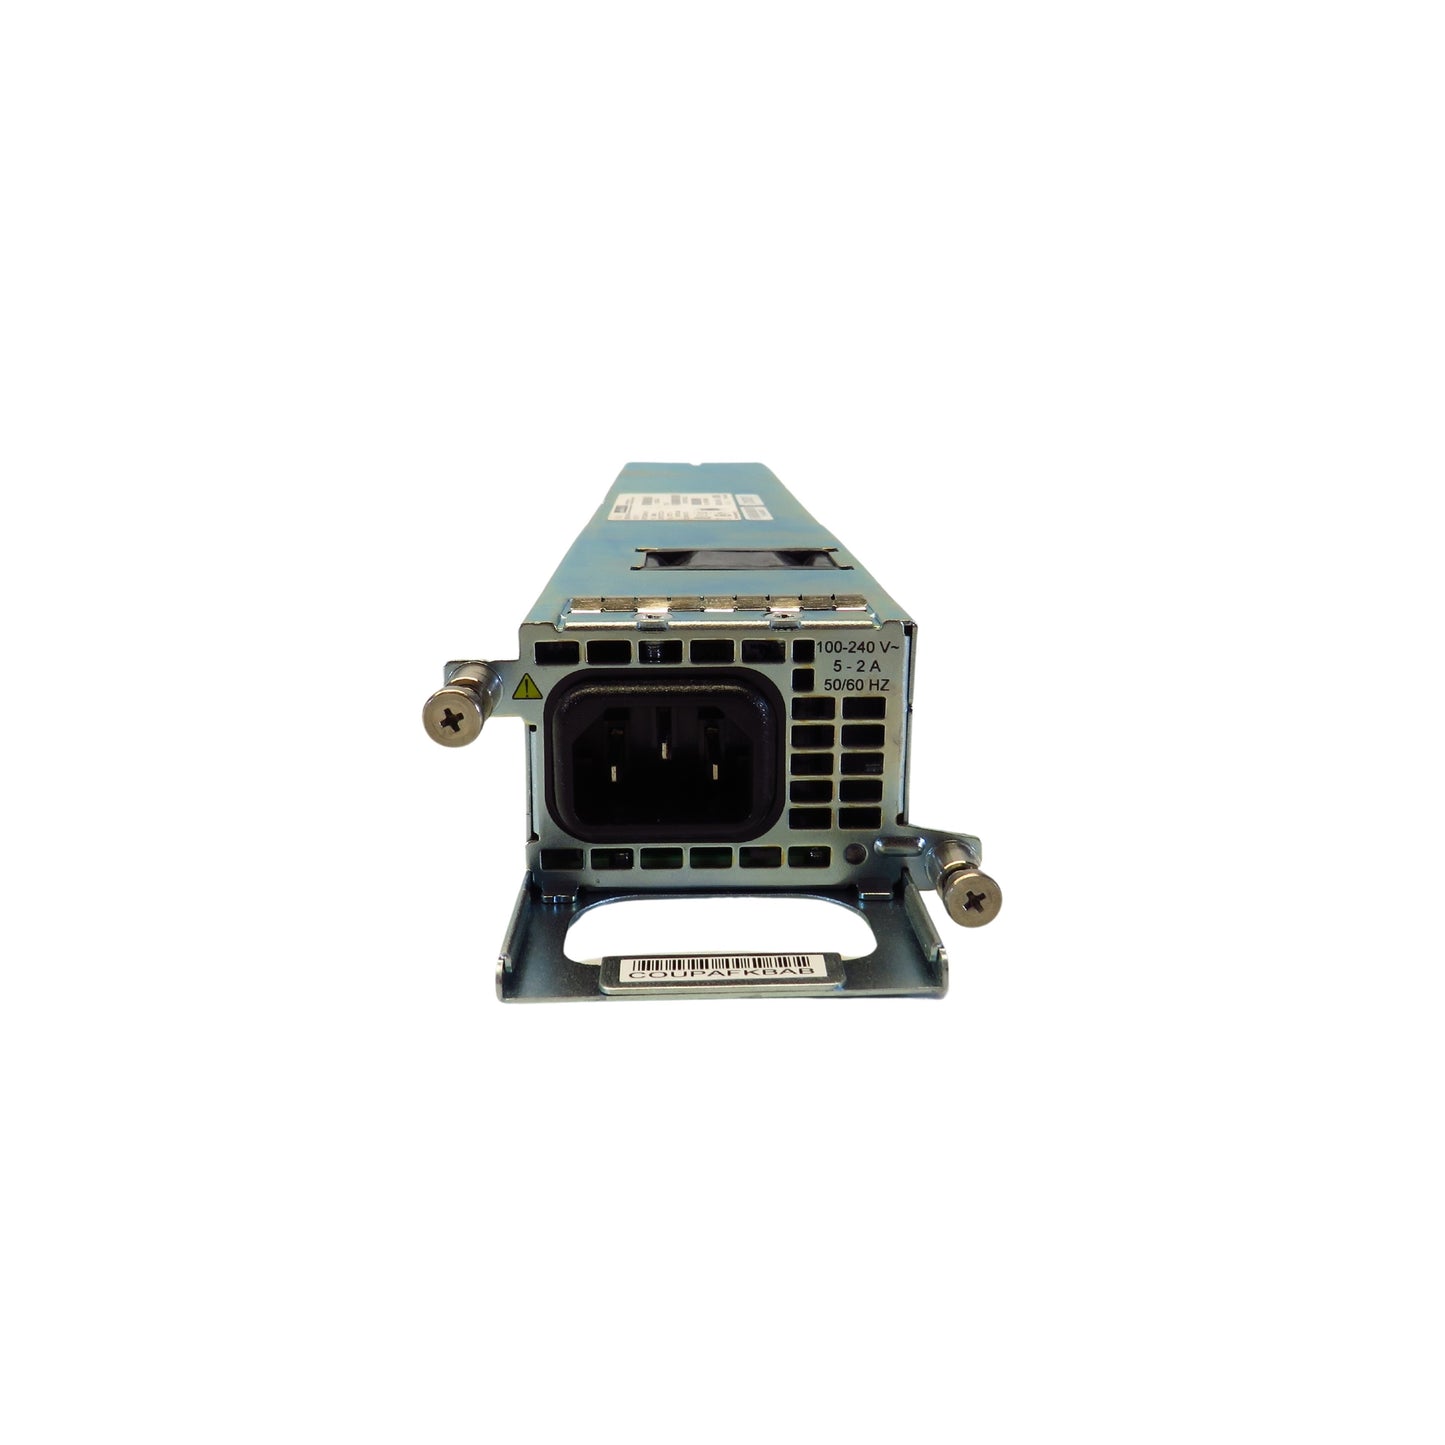 Cisco ASR1001-PWR-AC 400W AC Power Supply for ASR 1000 Series (Refurbished)